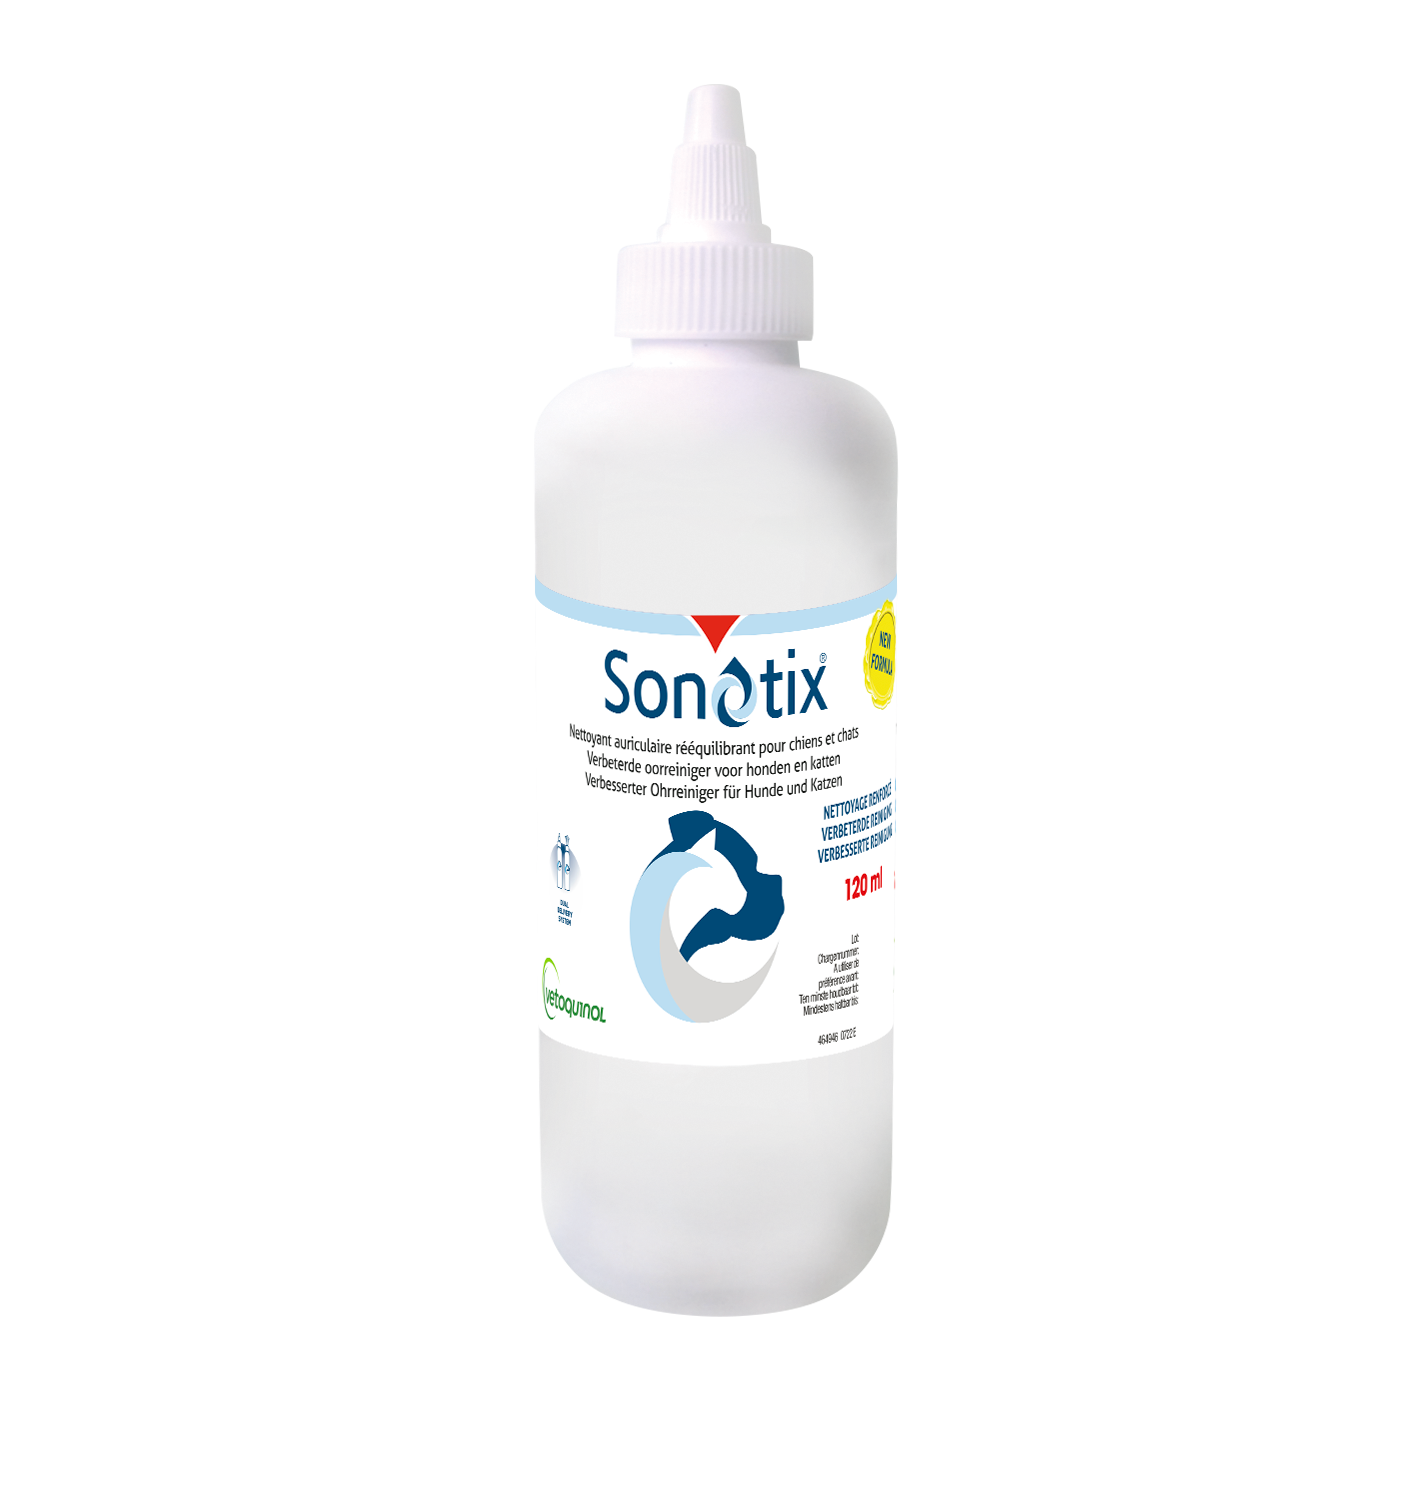 Sonotix verpakking